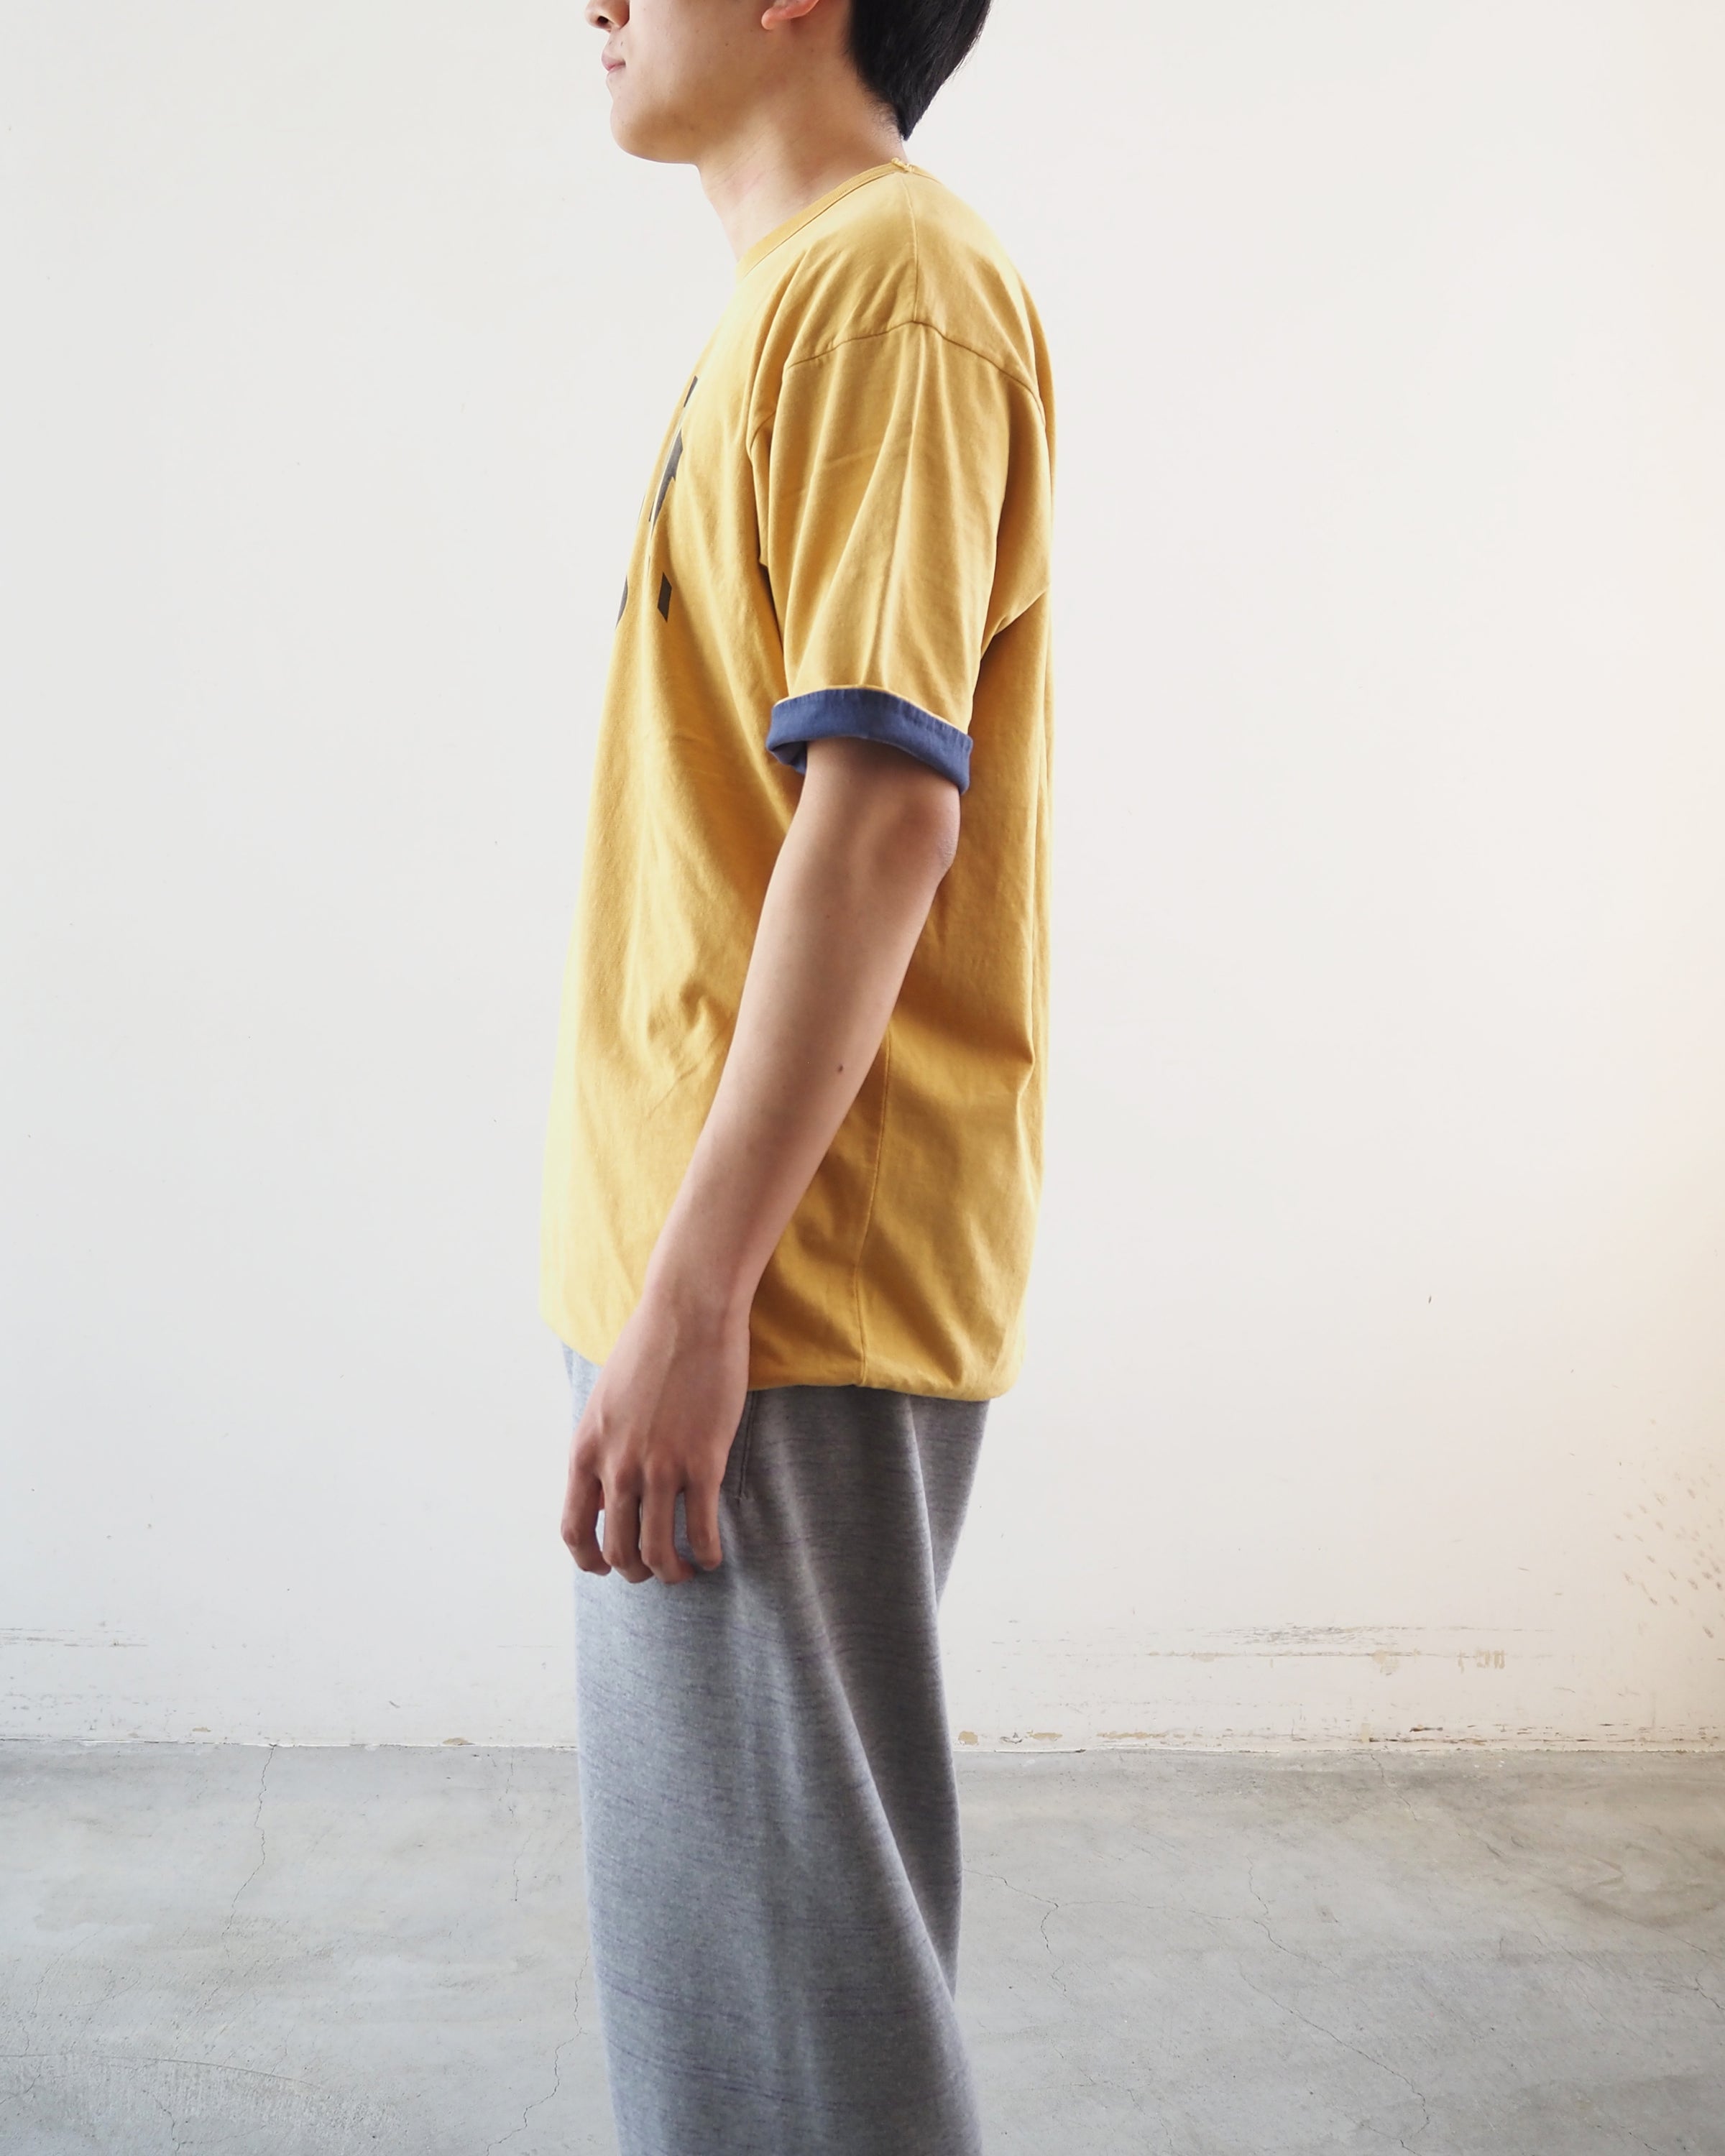 リバーシブル半袖ティーシャツ, Yellow × Navy